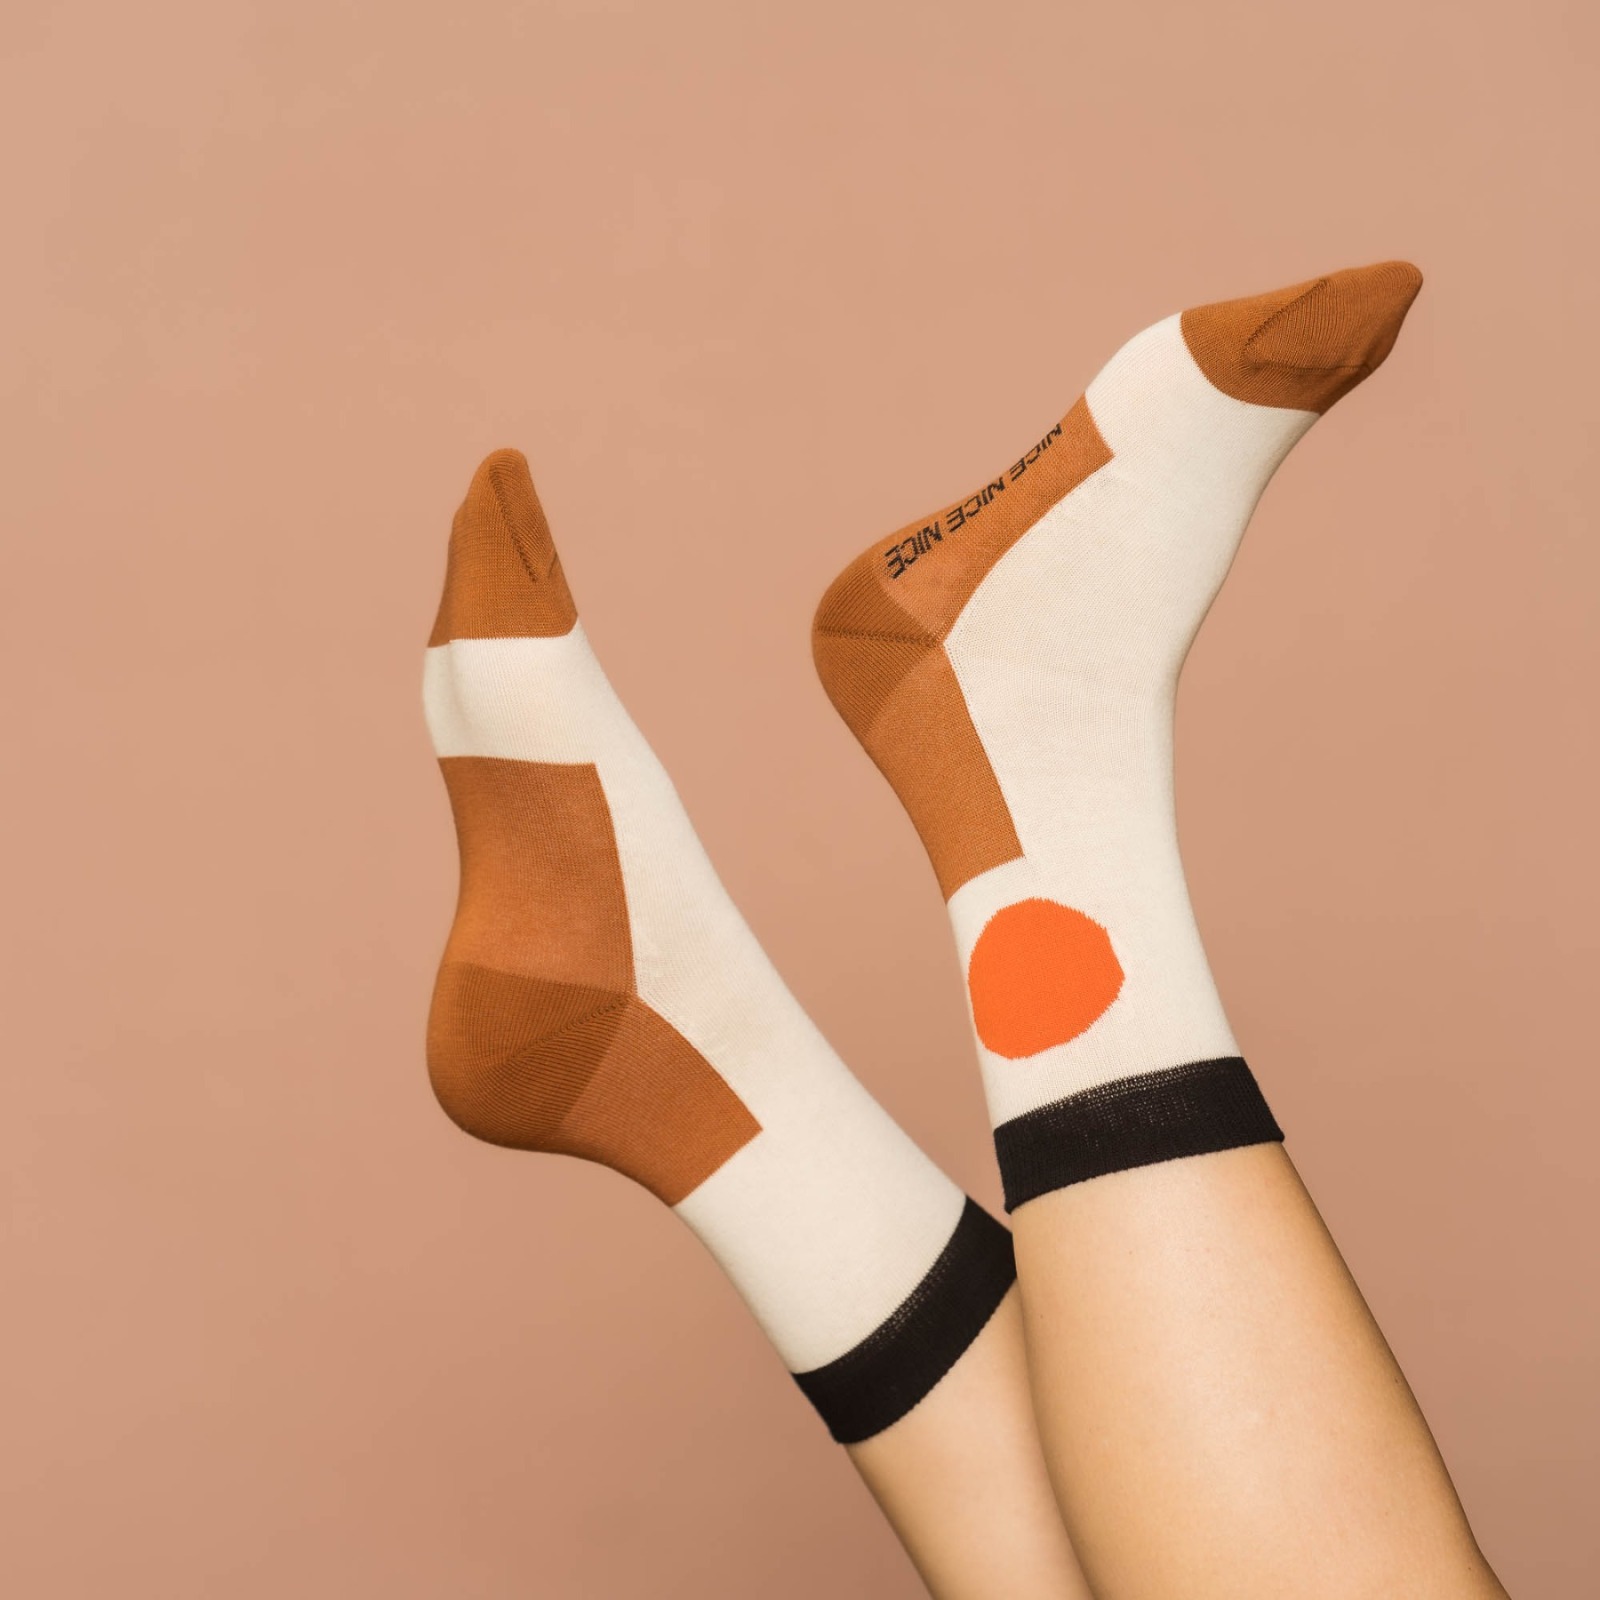 nicenicenice - nice socks minimal beige orange 3